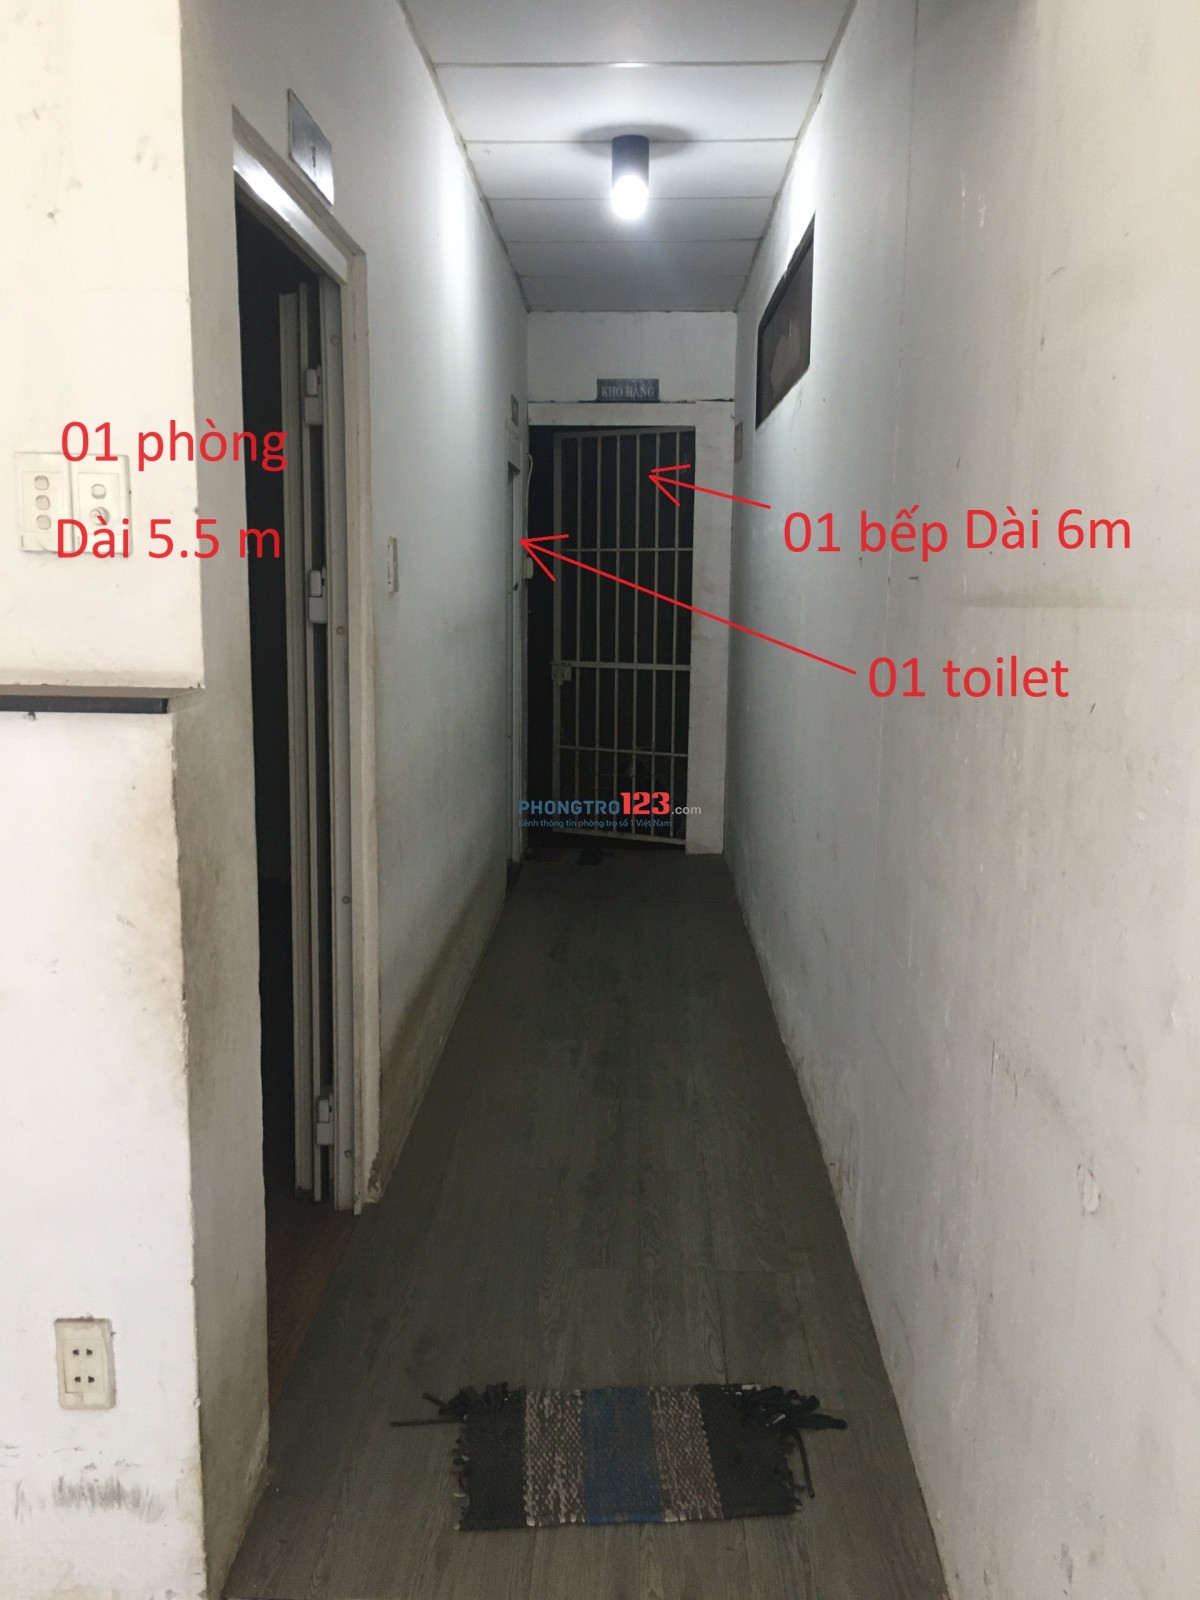 Nhà thuê nguyên căn DT sàn 88m2, 1 phòng 1 toilet, 1 bếp